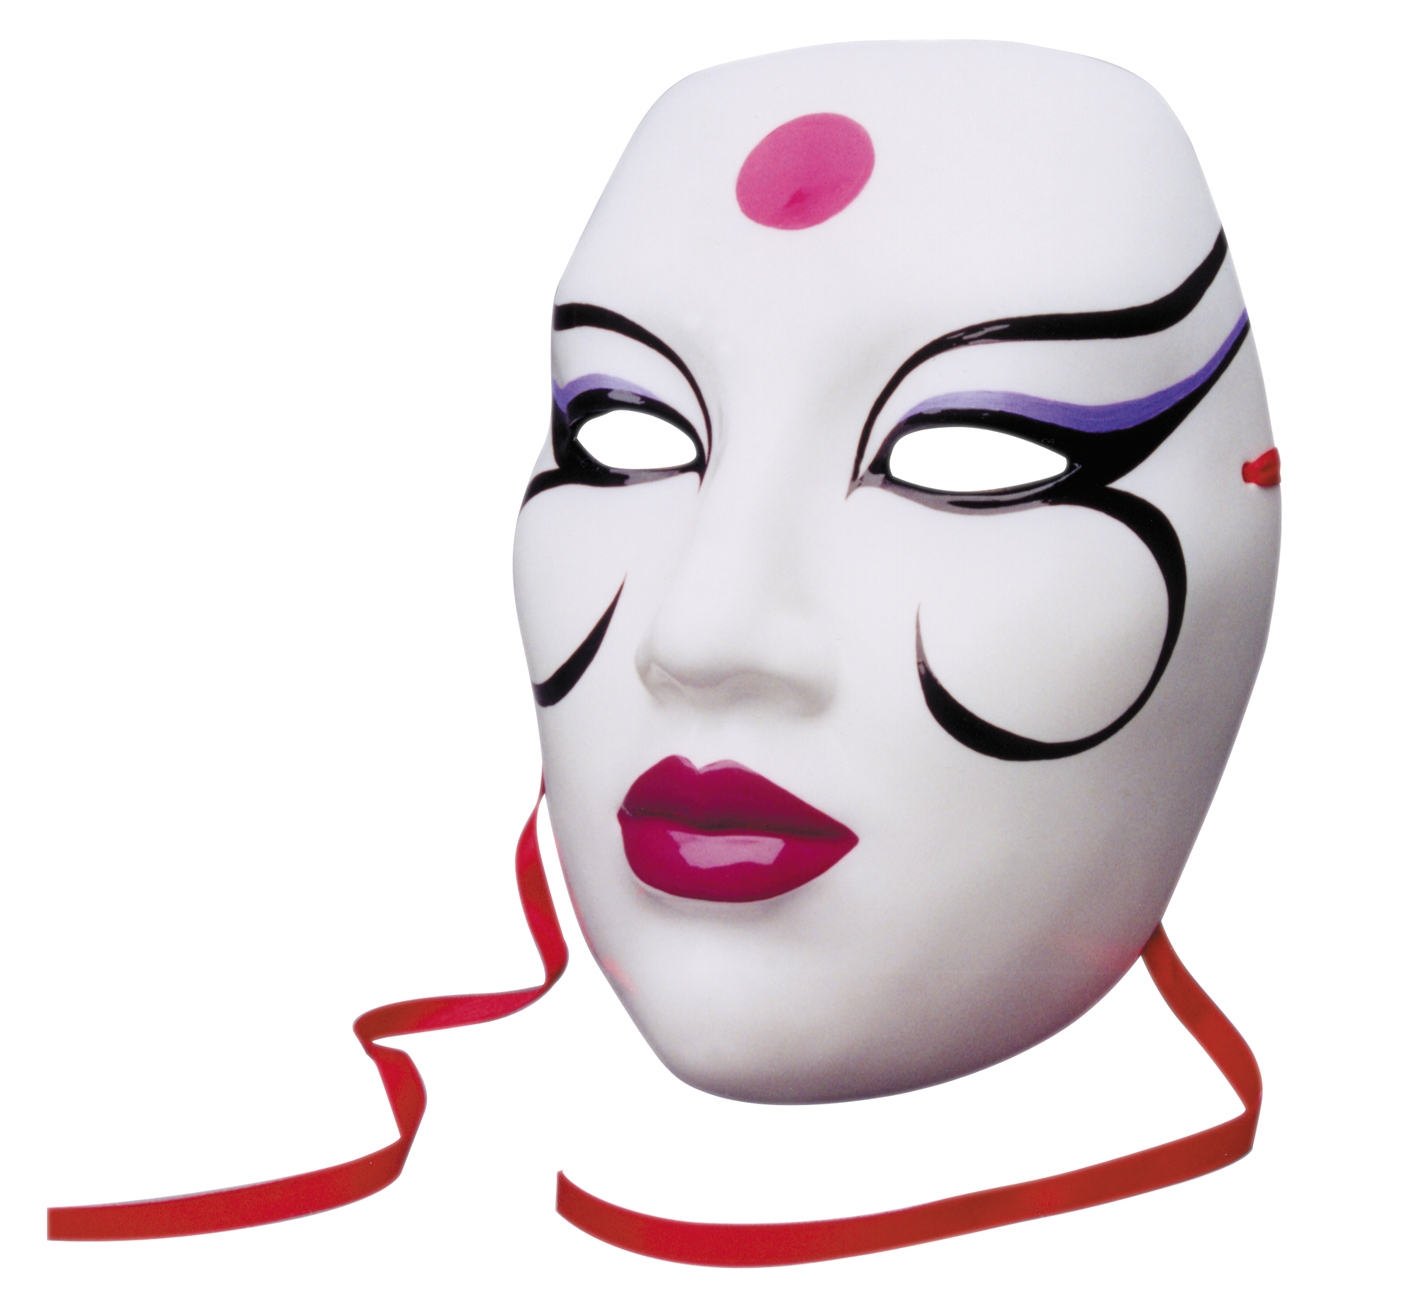 David Mack's Kabuki Hand Painted Masks !